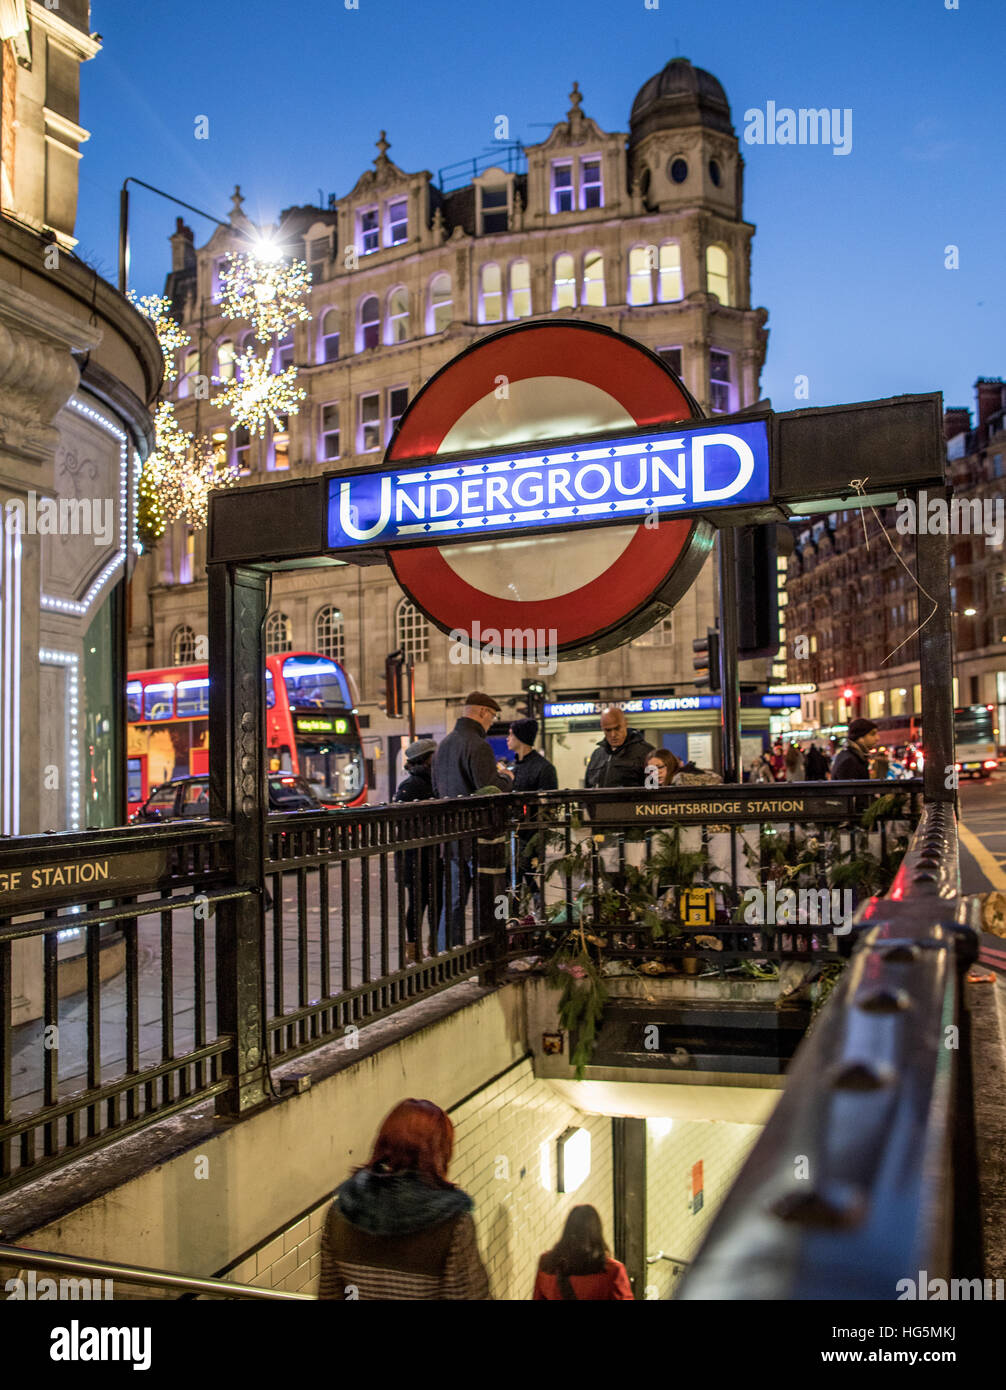 La station de métro Knightsbridge London UK Banque D'Images